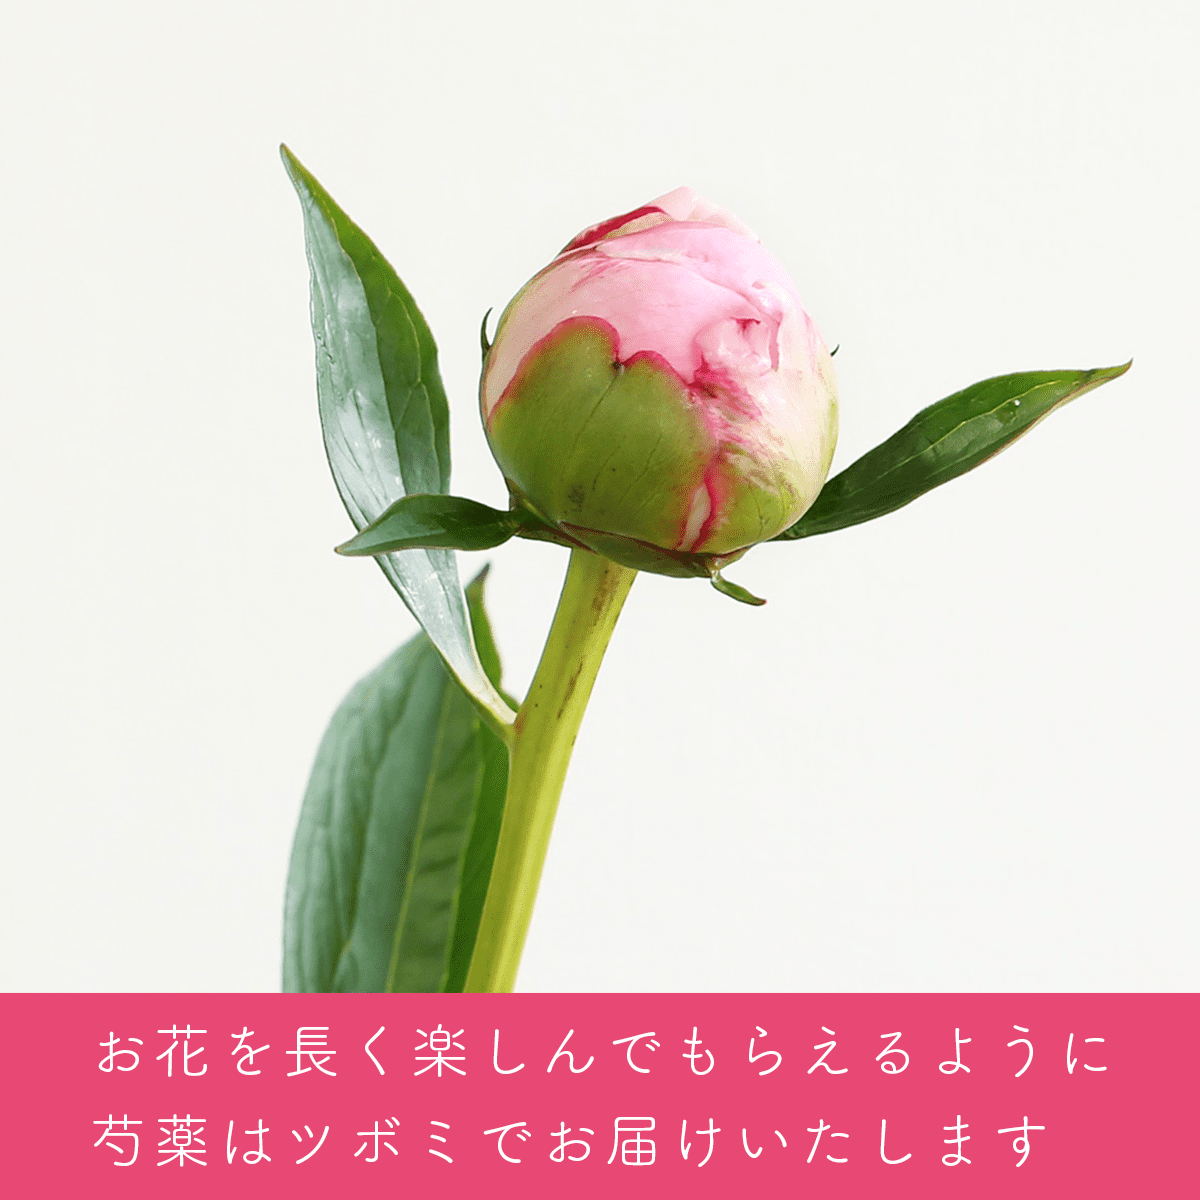 【母の日のプレゼント】生花ブーケ「ふわり」ハンドクリームセット